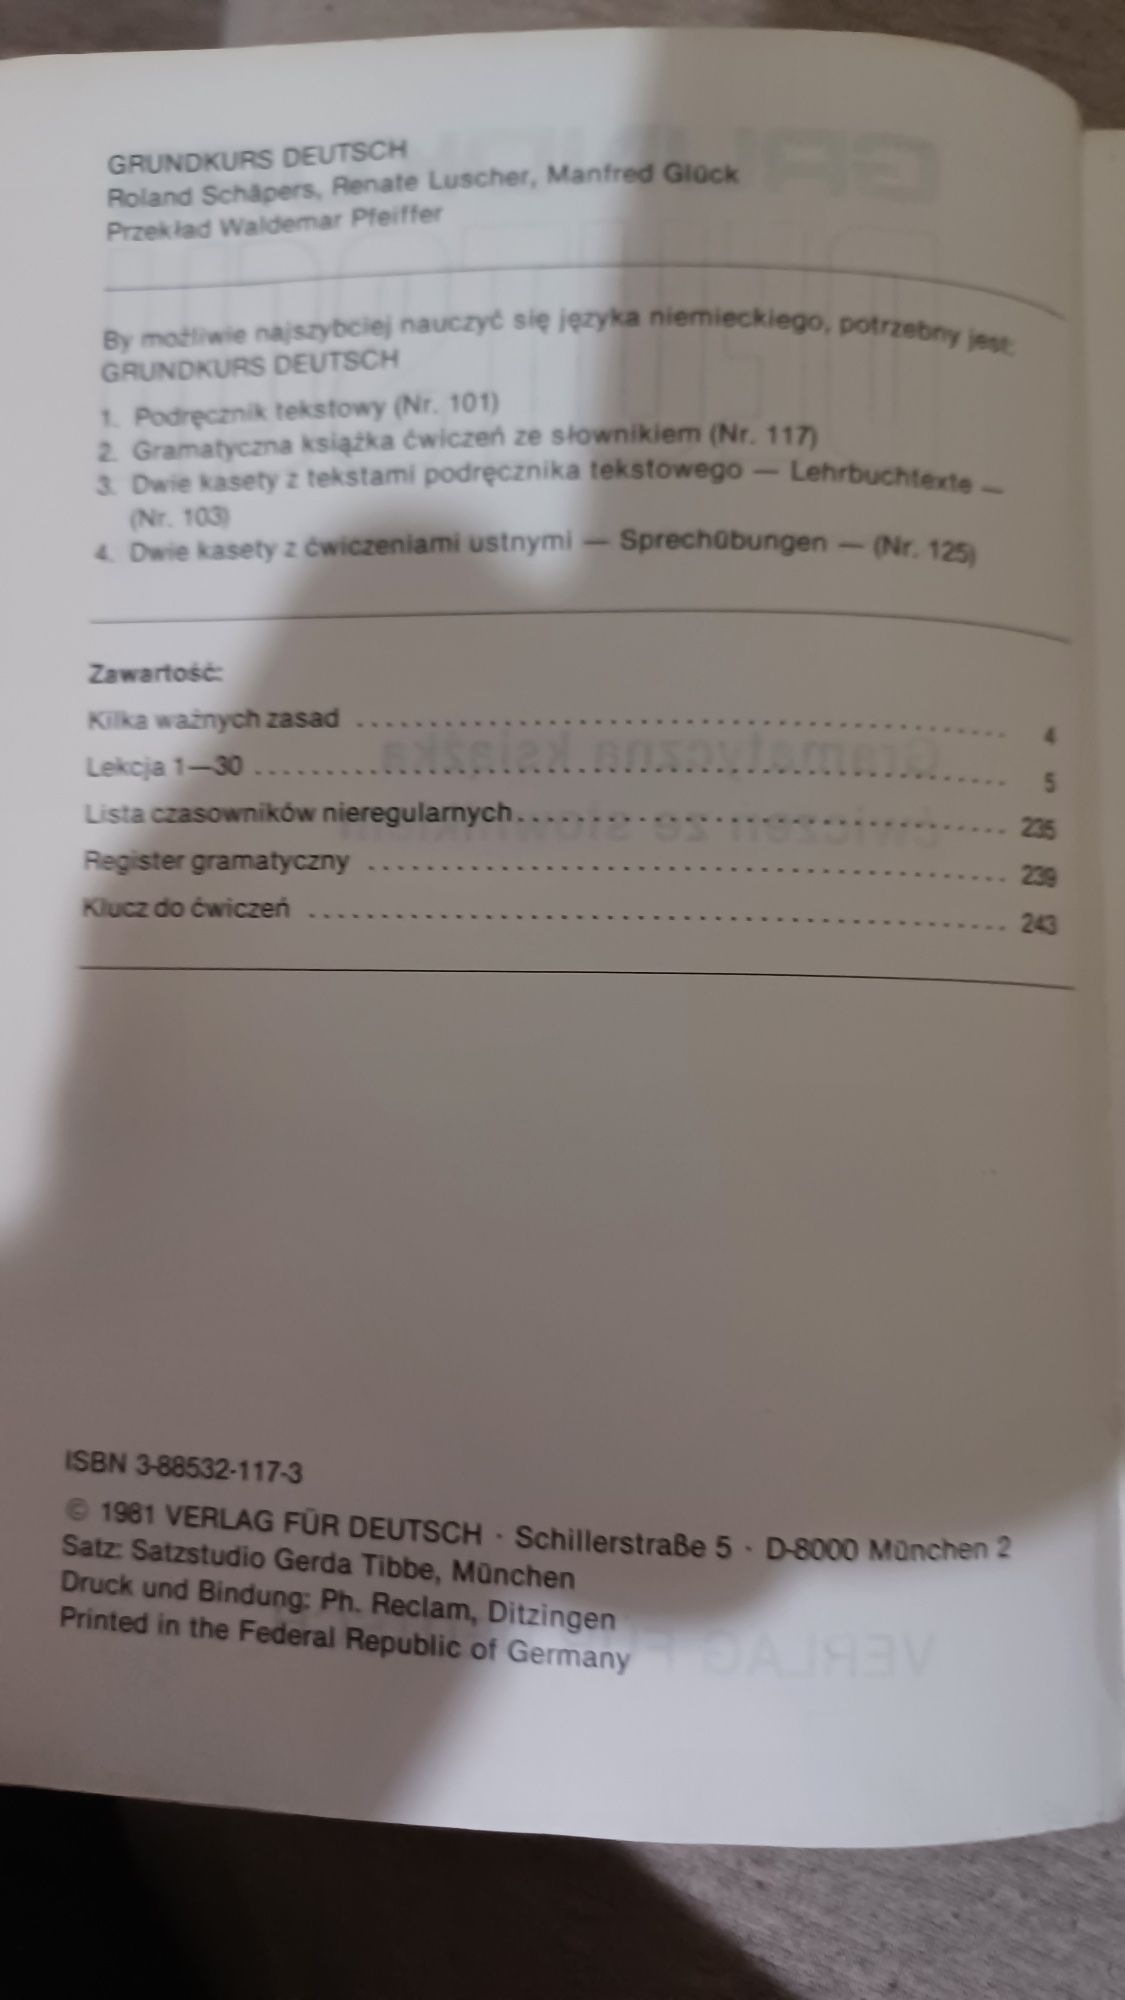 Grundkurs deutsch gramatyczna książka  ćwiczeń  że słownikiem